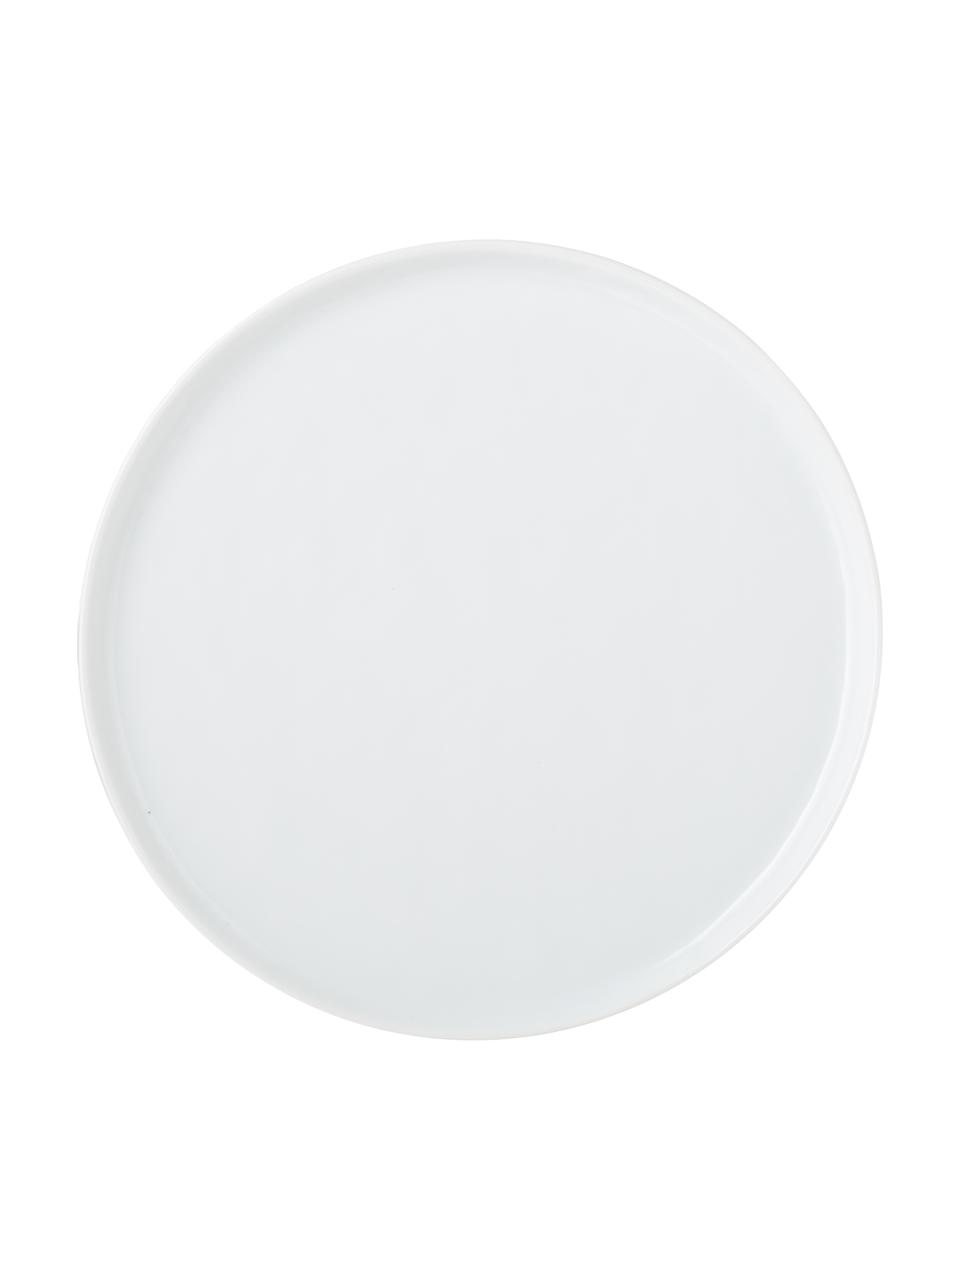 Snídaňové talíře s nerovným povrchem Porcelino, 4 ks, Porcelán v nerovnoměrném tvaru, Bílá, Ø 22 cm